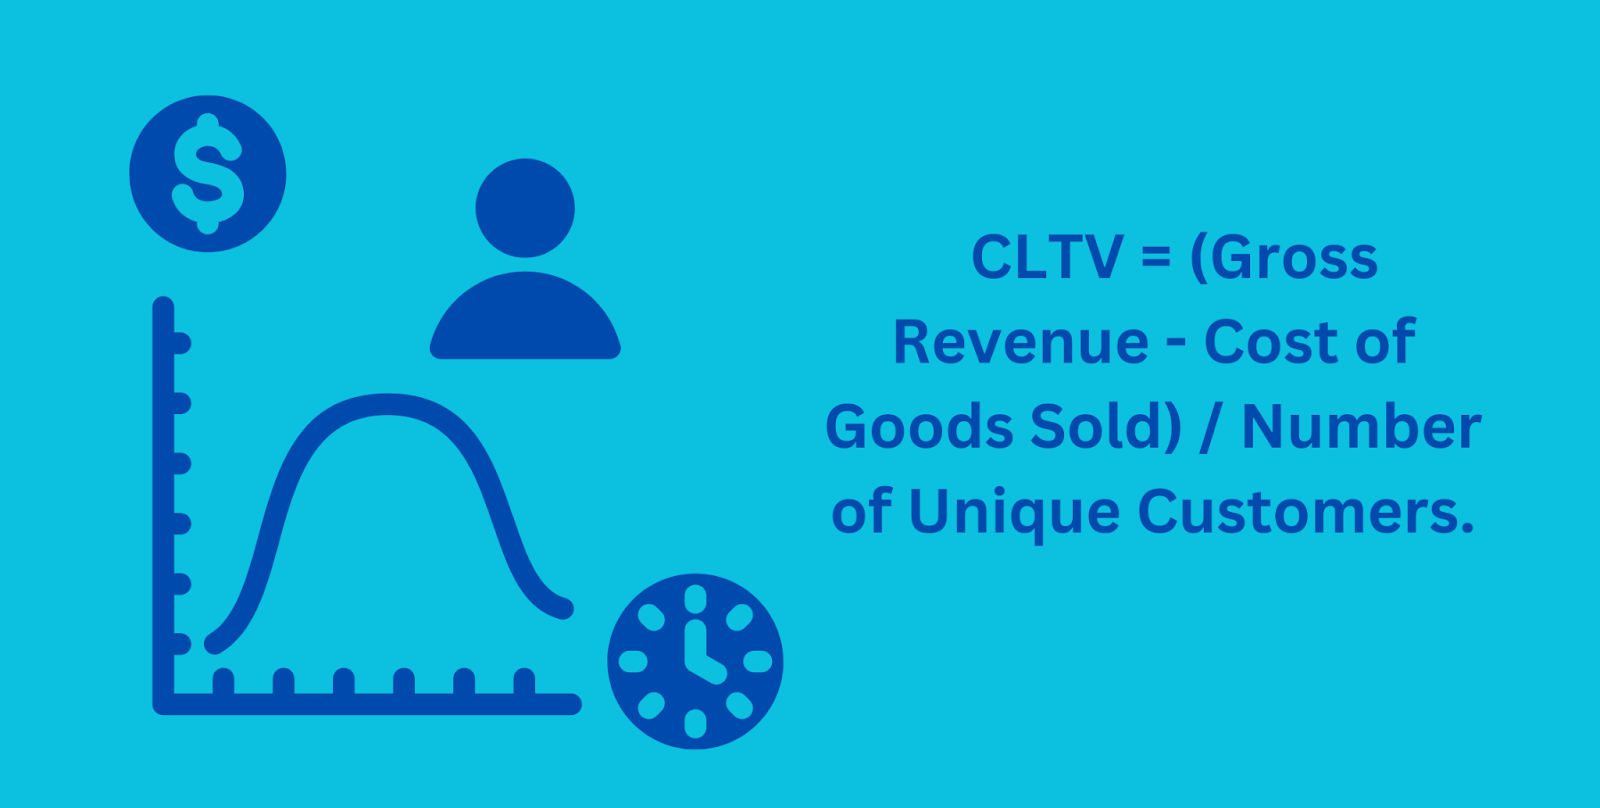 CLTV or CLV